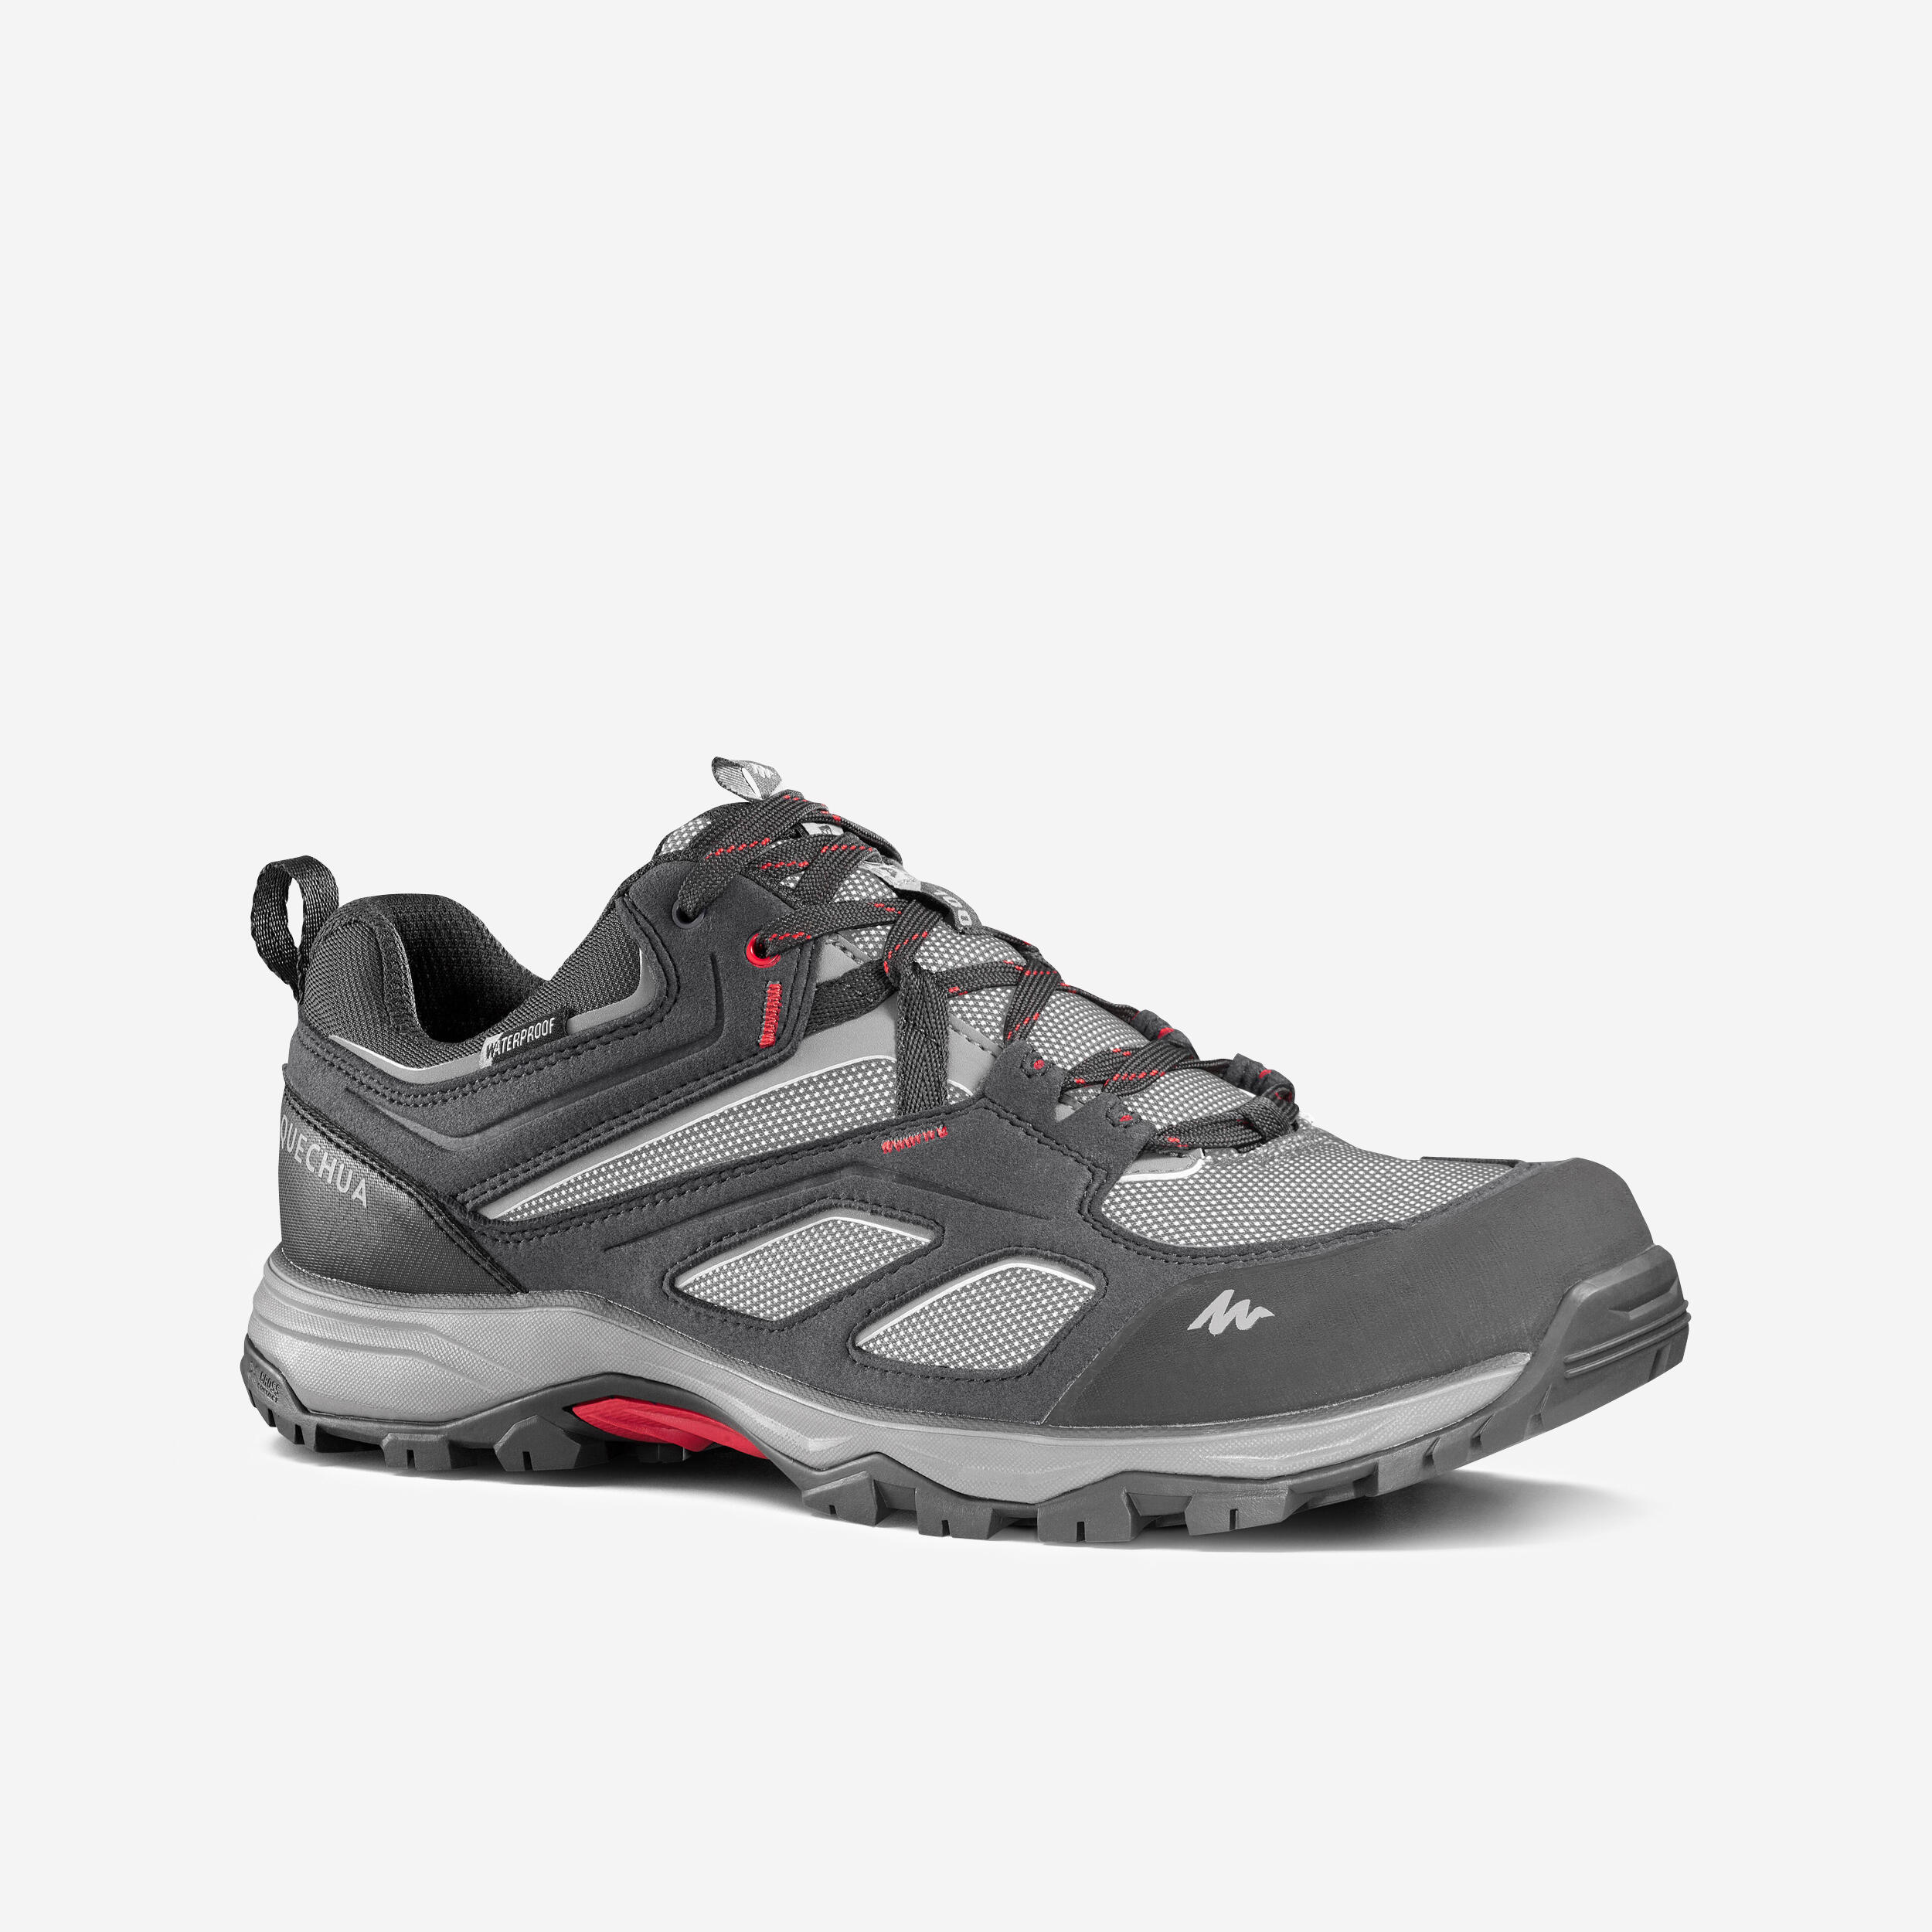 QUECHUA Men's waterproof mountain hiking shoes - MH100 - Grey